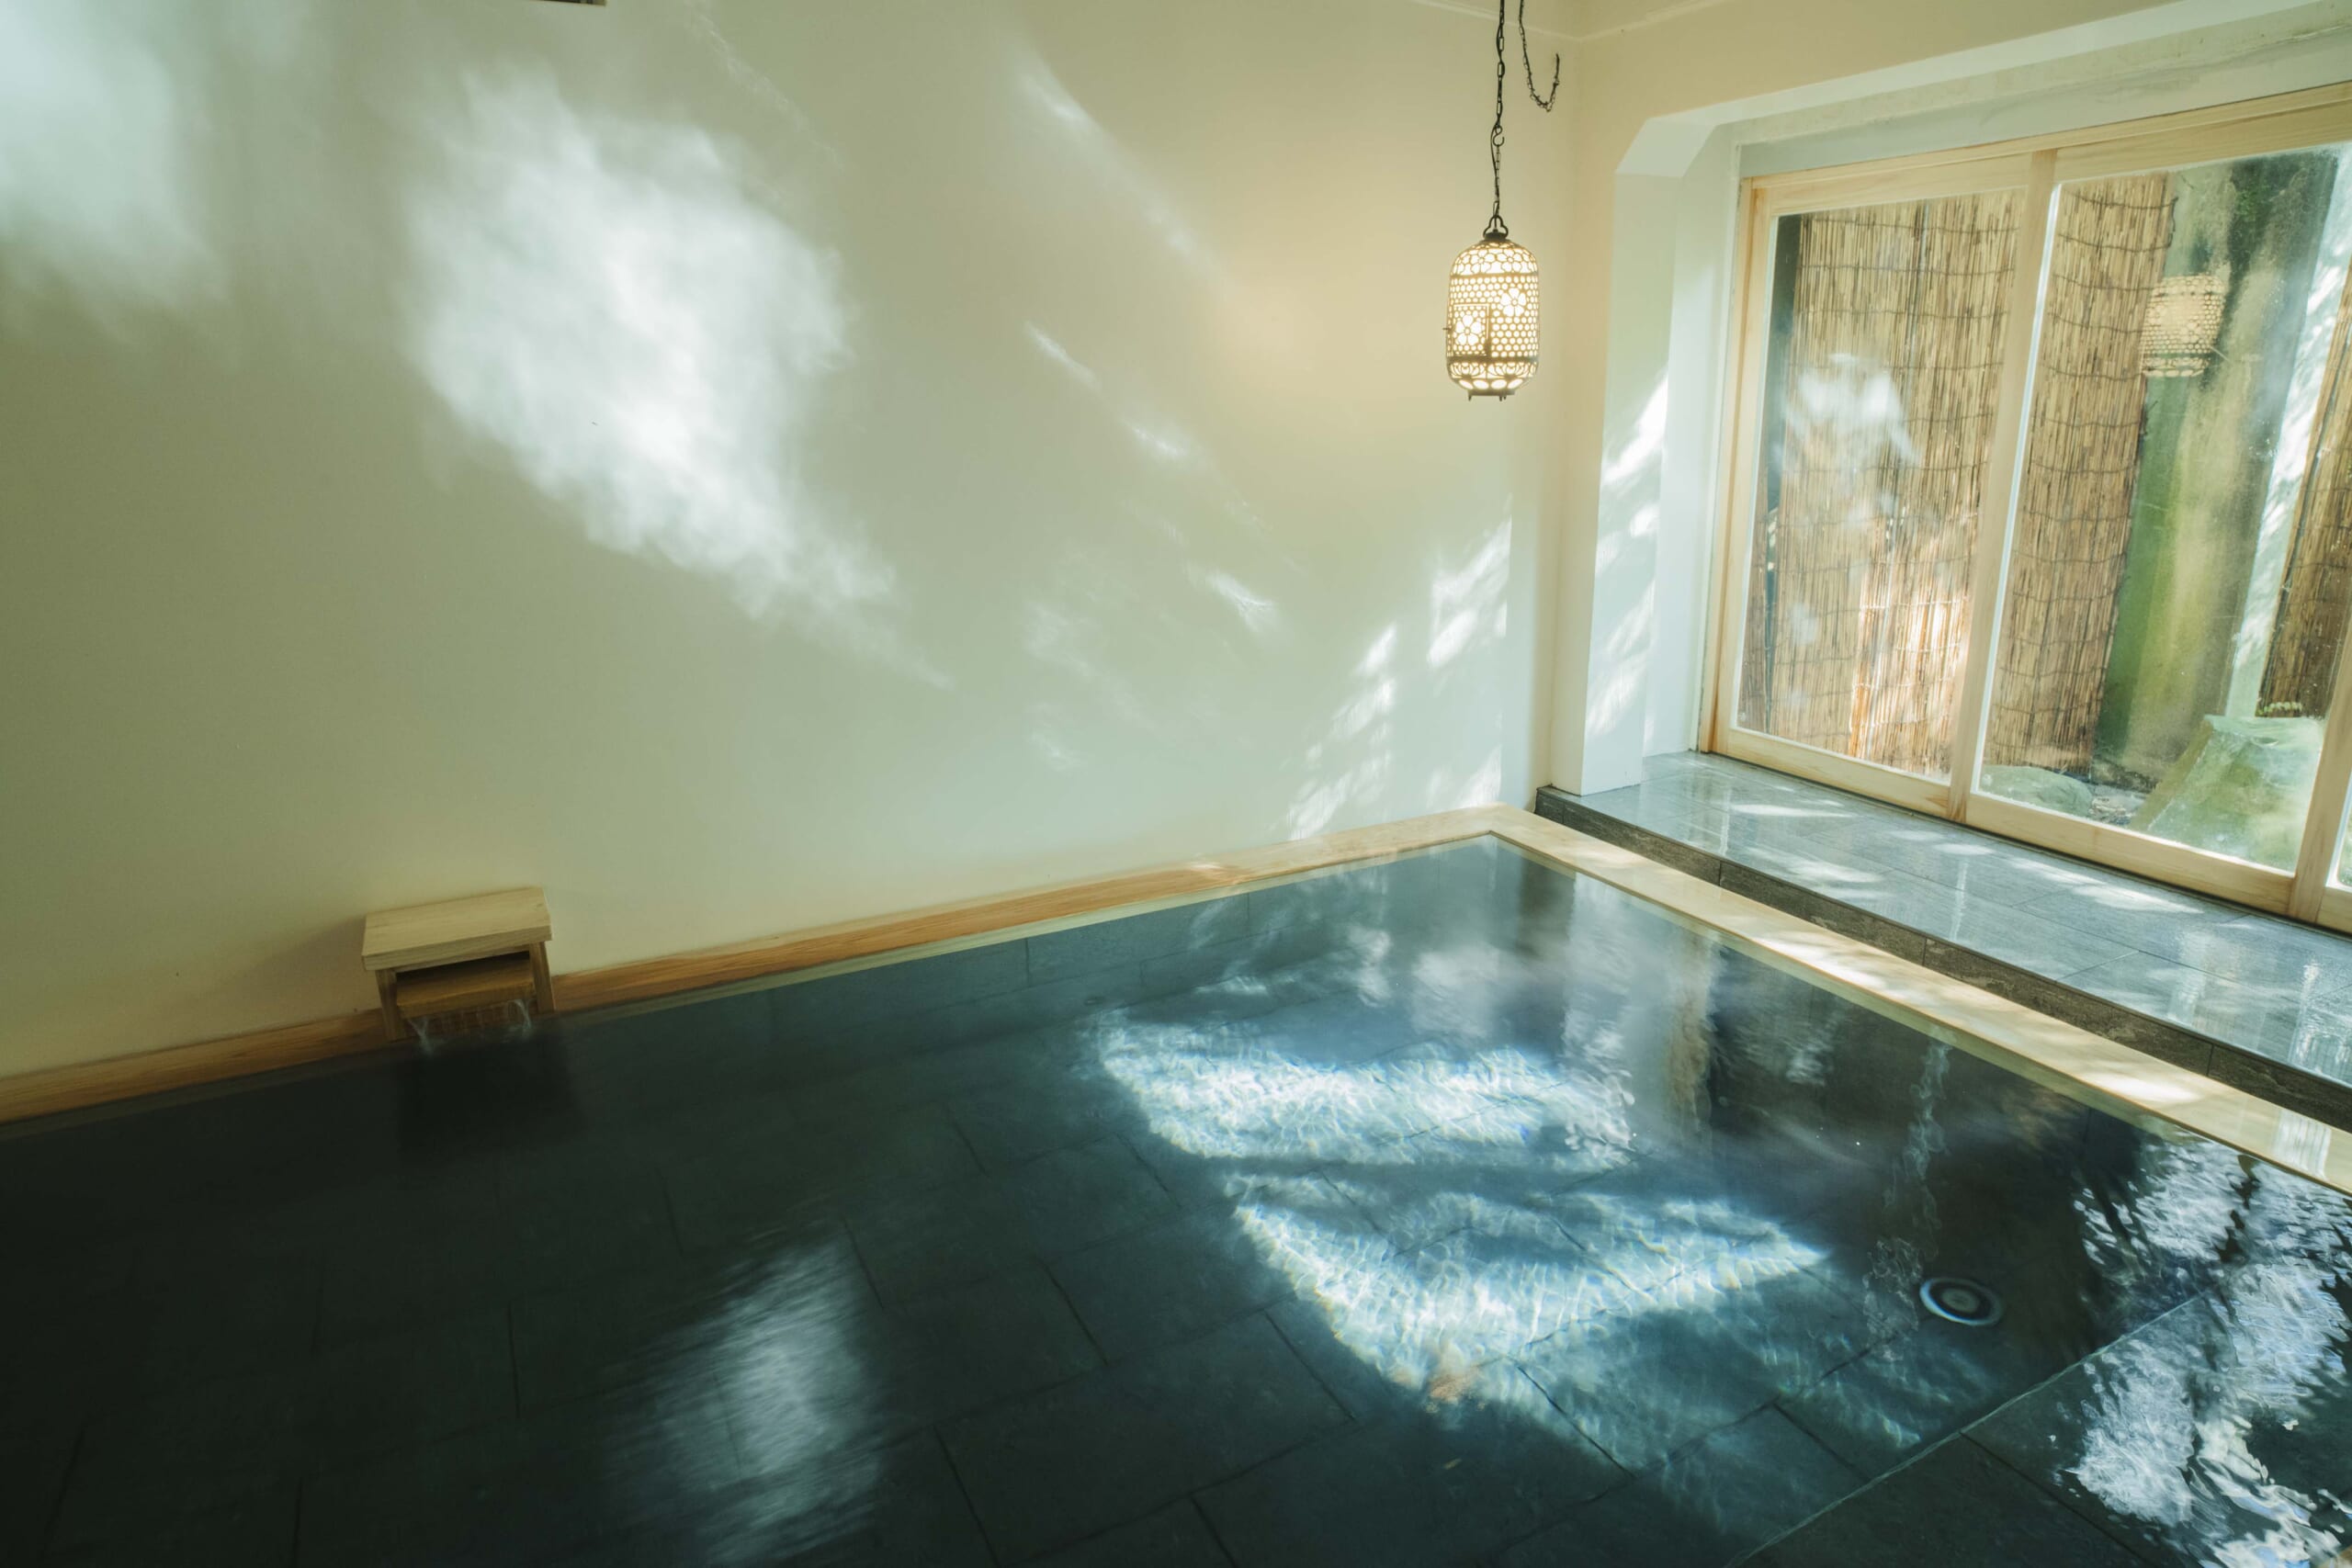 Ochiairo's indoor bath, Tsuki no Yu